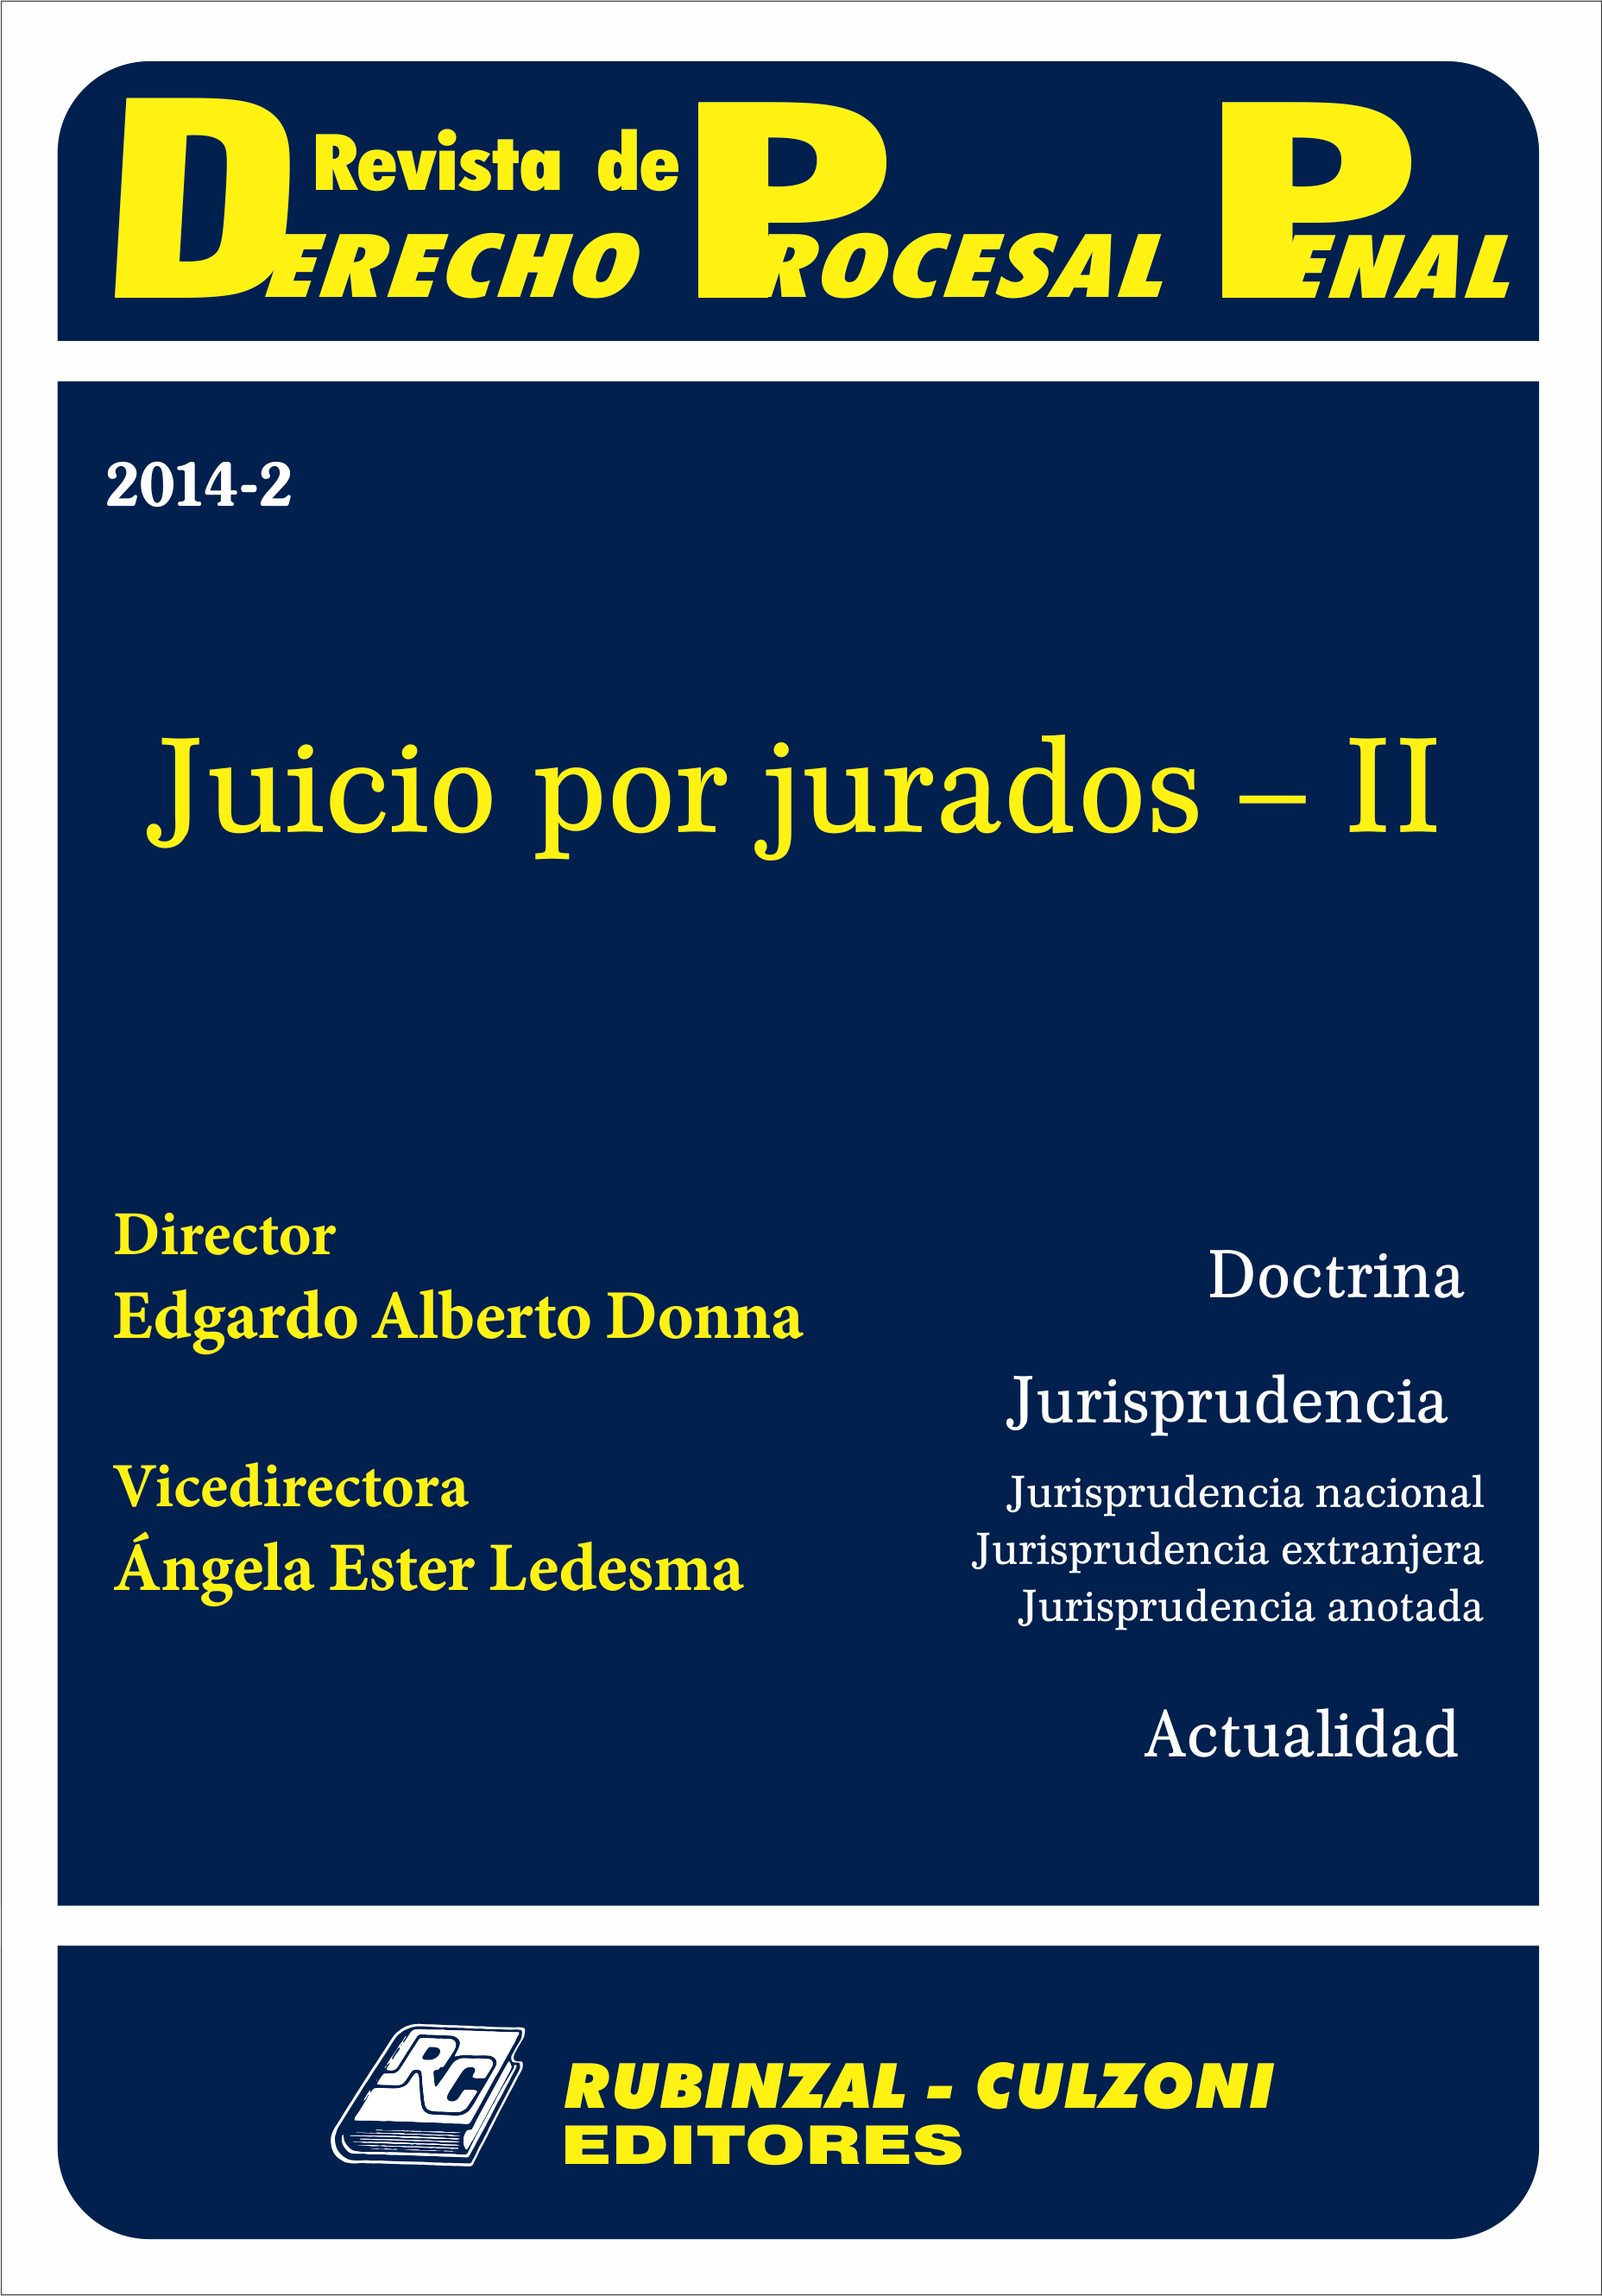 Revista de Derecho Procesal Penal - Juicio por Jurados - II.